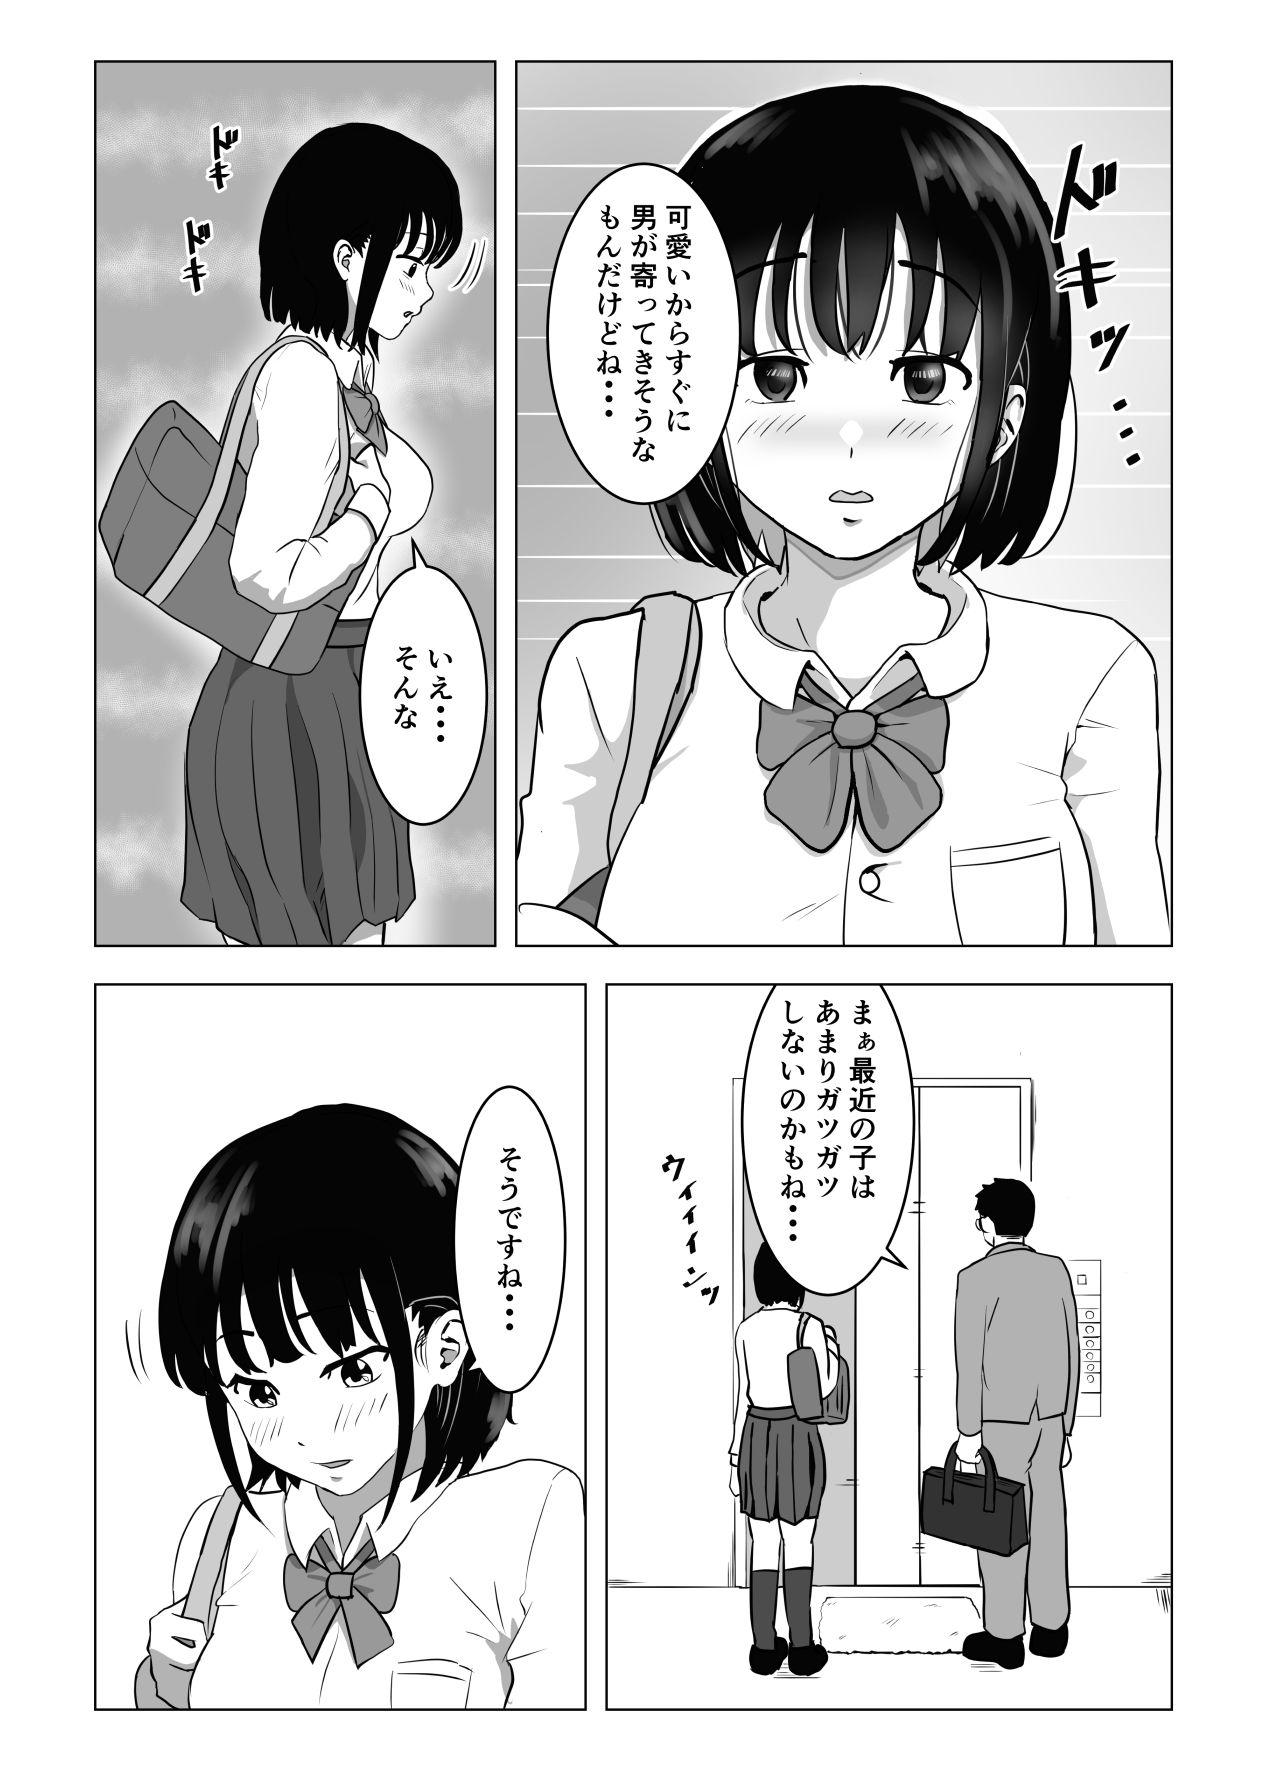 Girlongirl Oji kagi ― kyonyu ● ● wa otonari no ojisan to etchishitai ― - Original Raw - Page 9